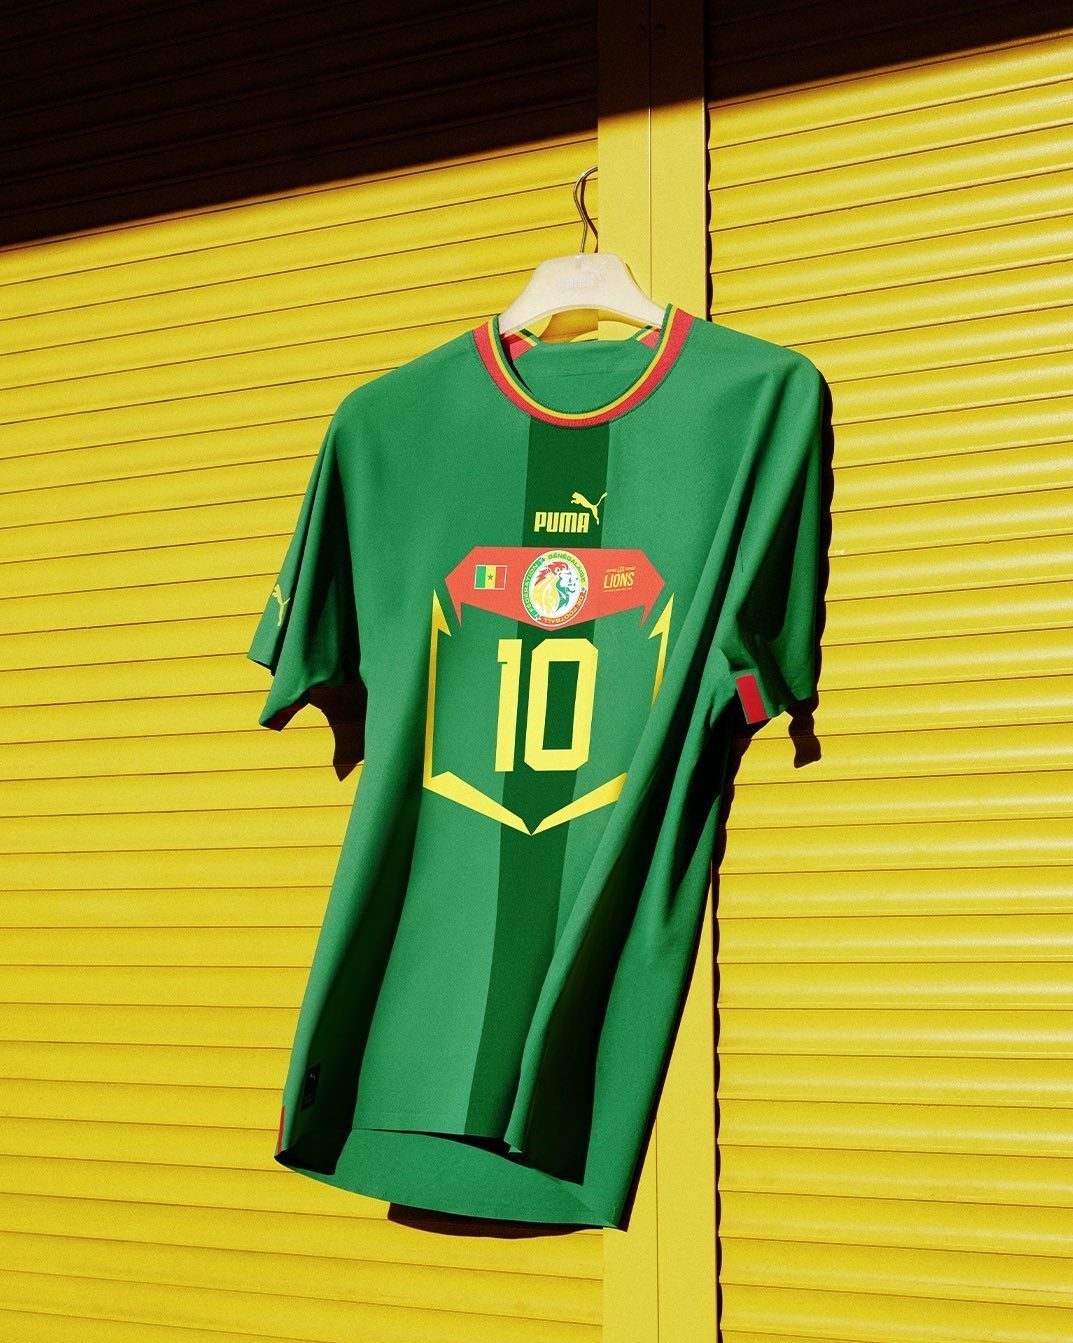 14010607164005449259882110 - رونمایی پوما از پیراهن 6 تیم راه یافته به جام جهانی 2022 + عکس